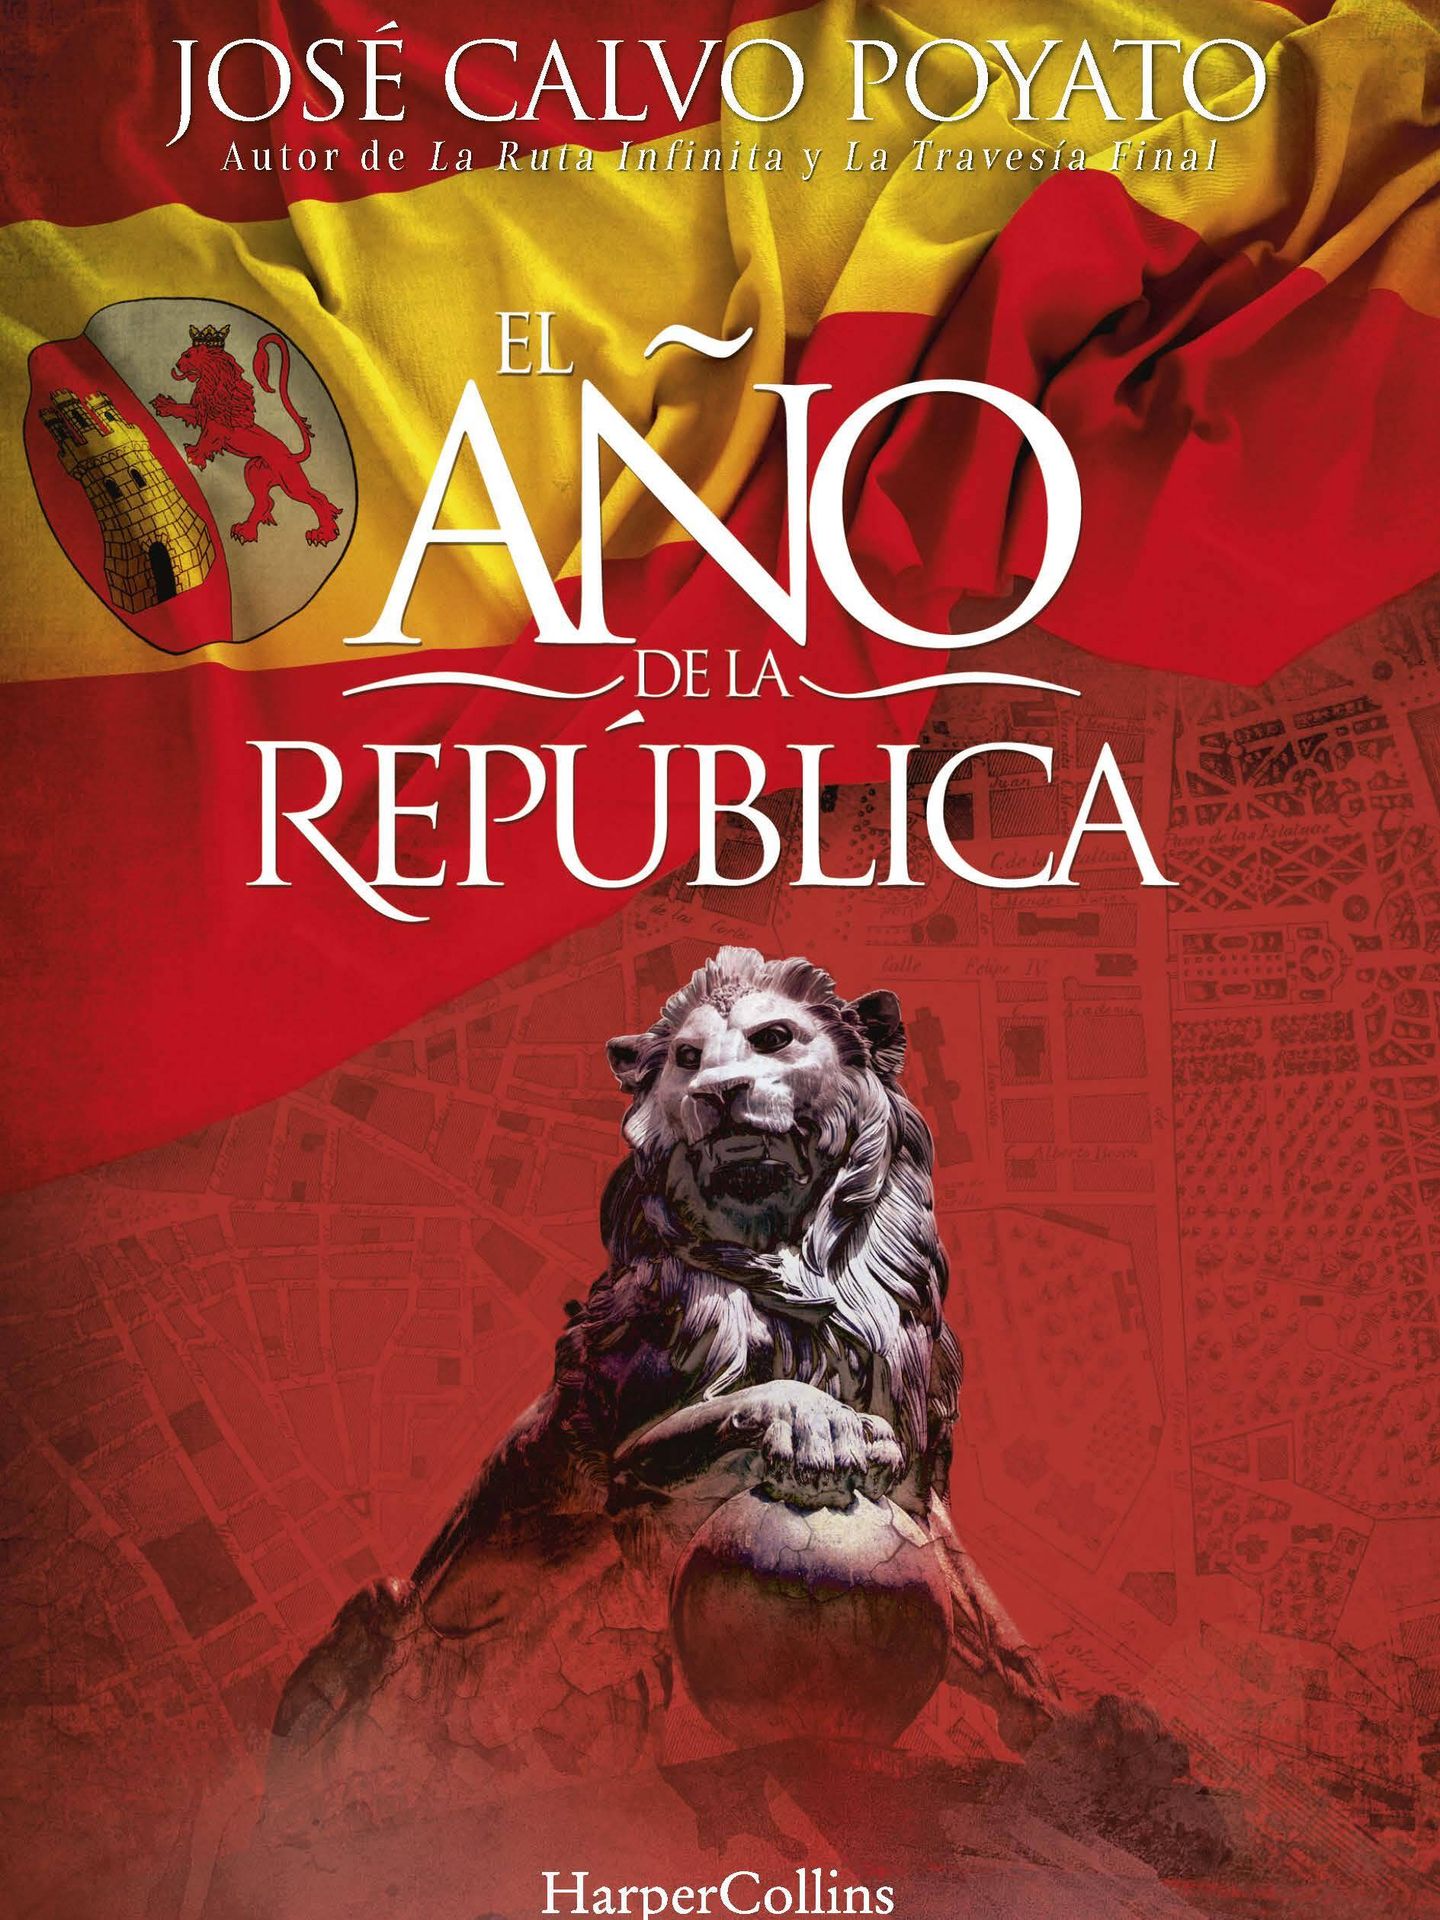 'El año de la República', José Calvo Poyato.